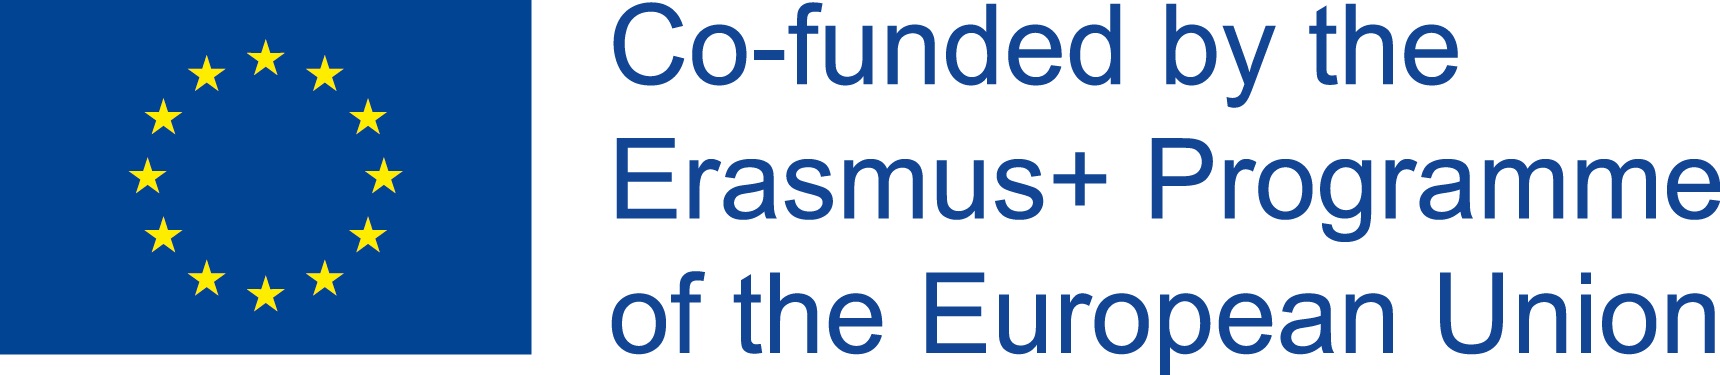 Logo of EU flag and ERASMUS+